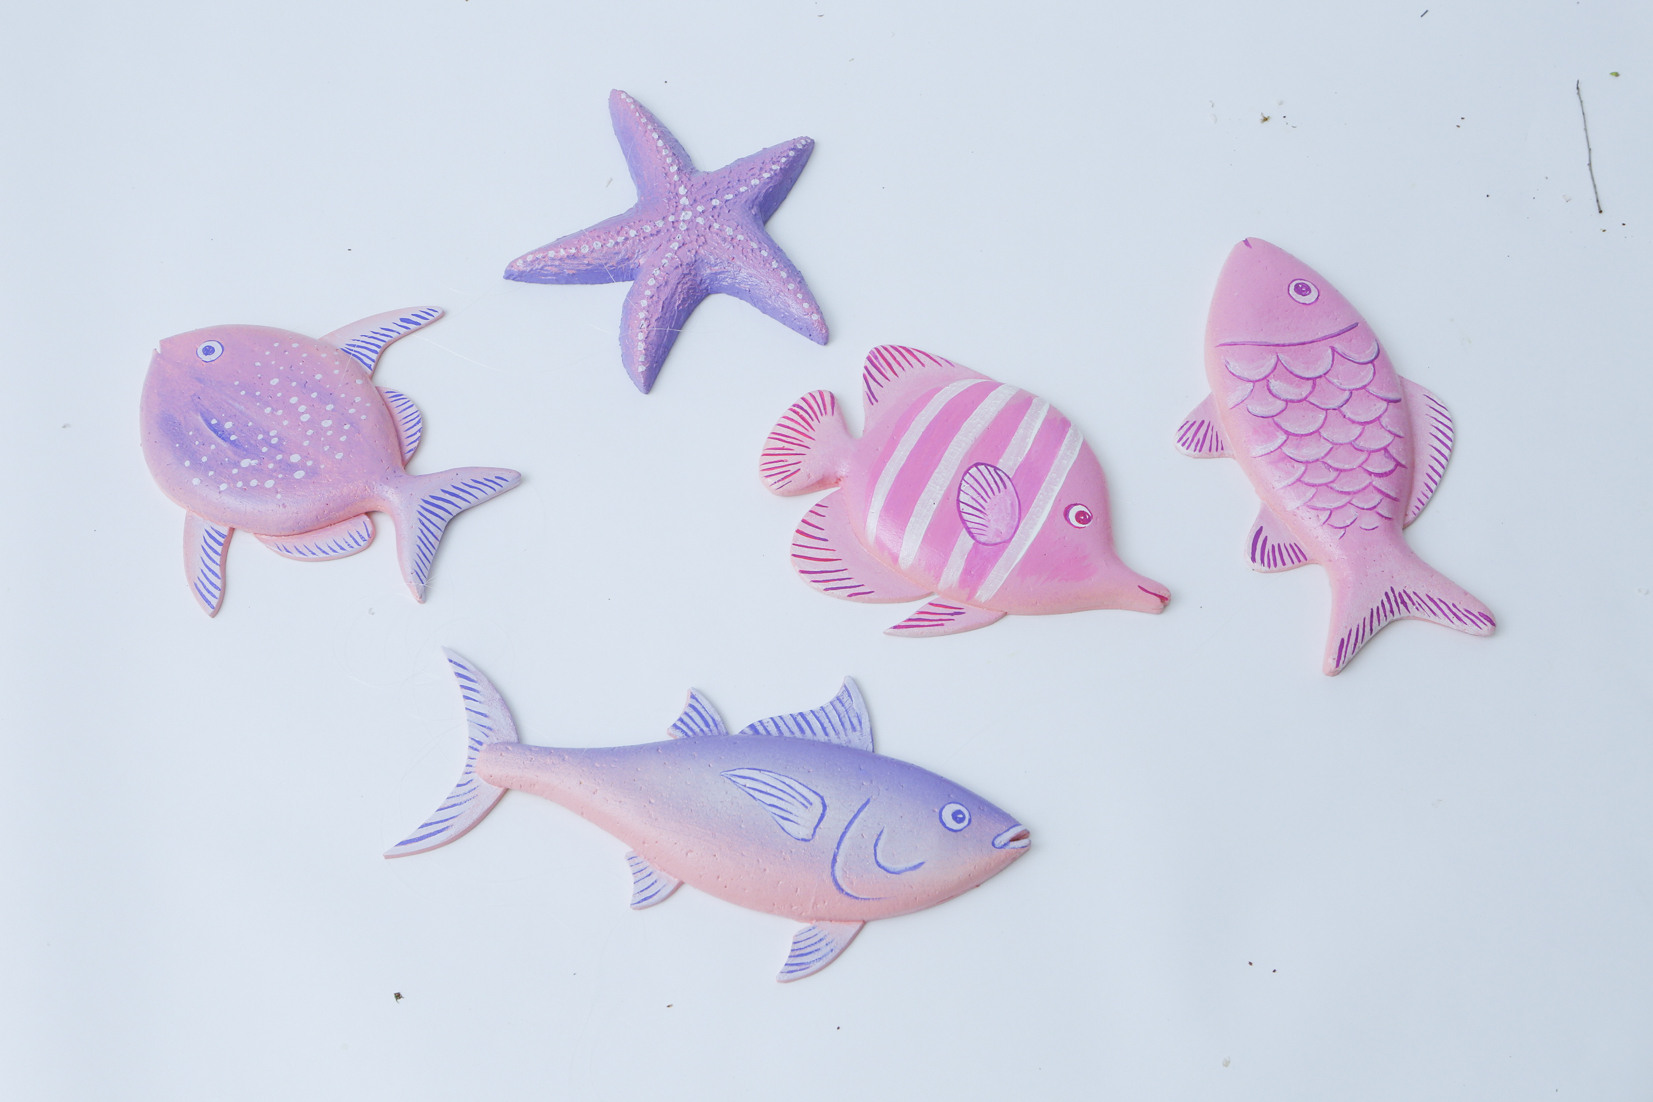 ザテレビジョン 発売中の ザテレビジョンcolors には ５月にスタートする 朝ドラ おかえりモネ に出演する 永瀬廉 さんが登場 今回は漁師さんの役ということで 小道具としてピンク 紫のお魚を作りました 永瀬さんとこちらのかわいいお魚の